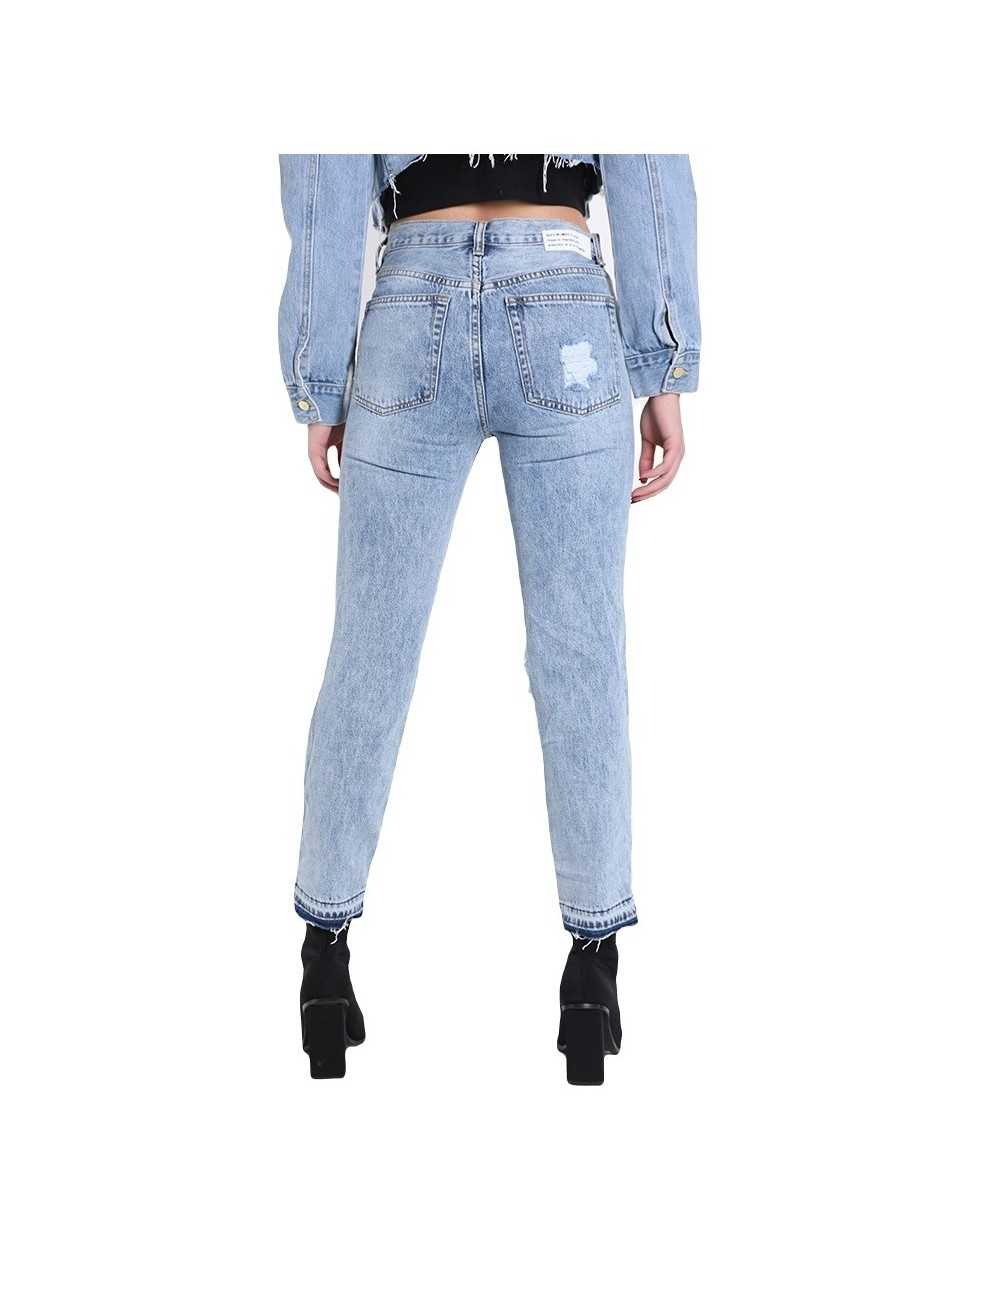 Sexy Woman Jeans donna in cotone denim strappati - Jeans & Pantaloni Donna